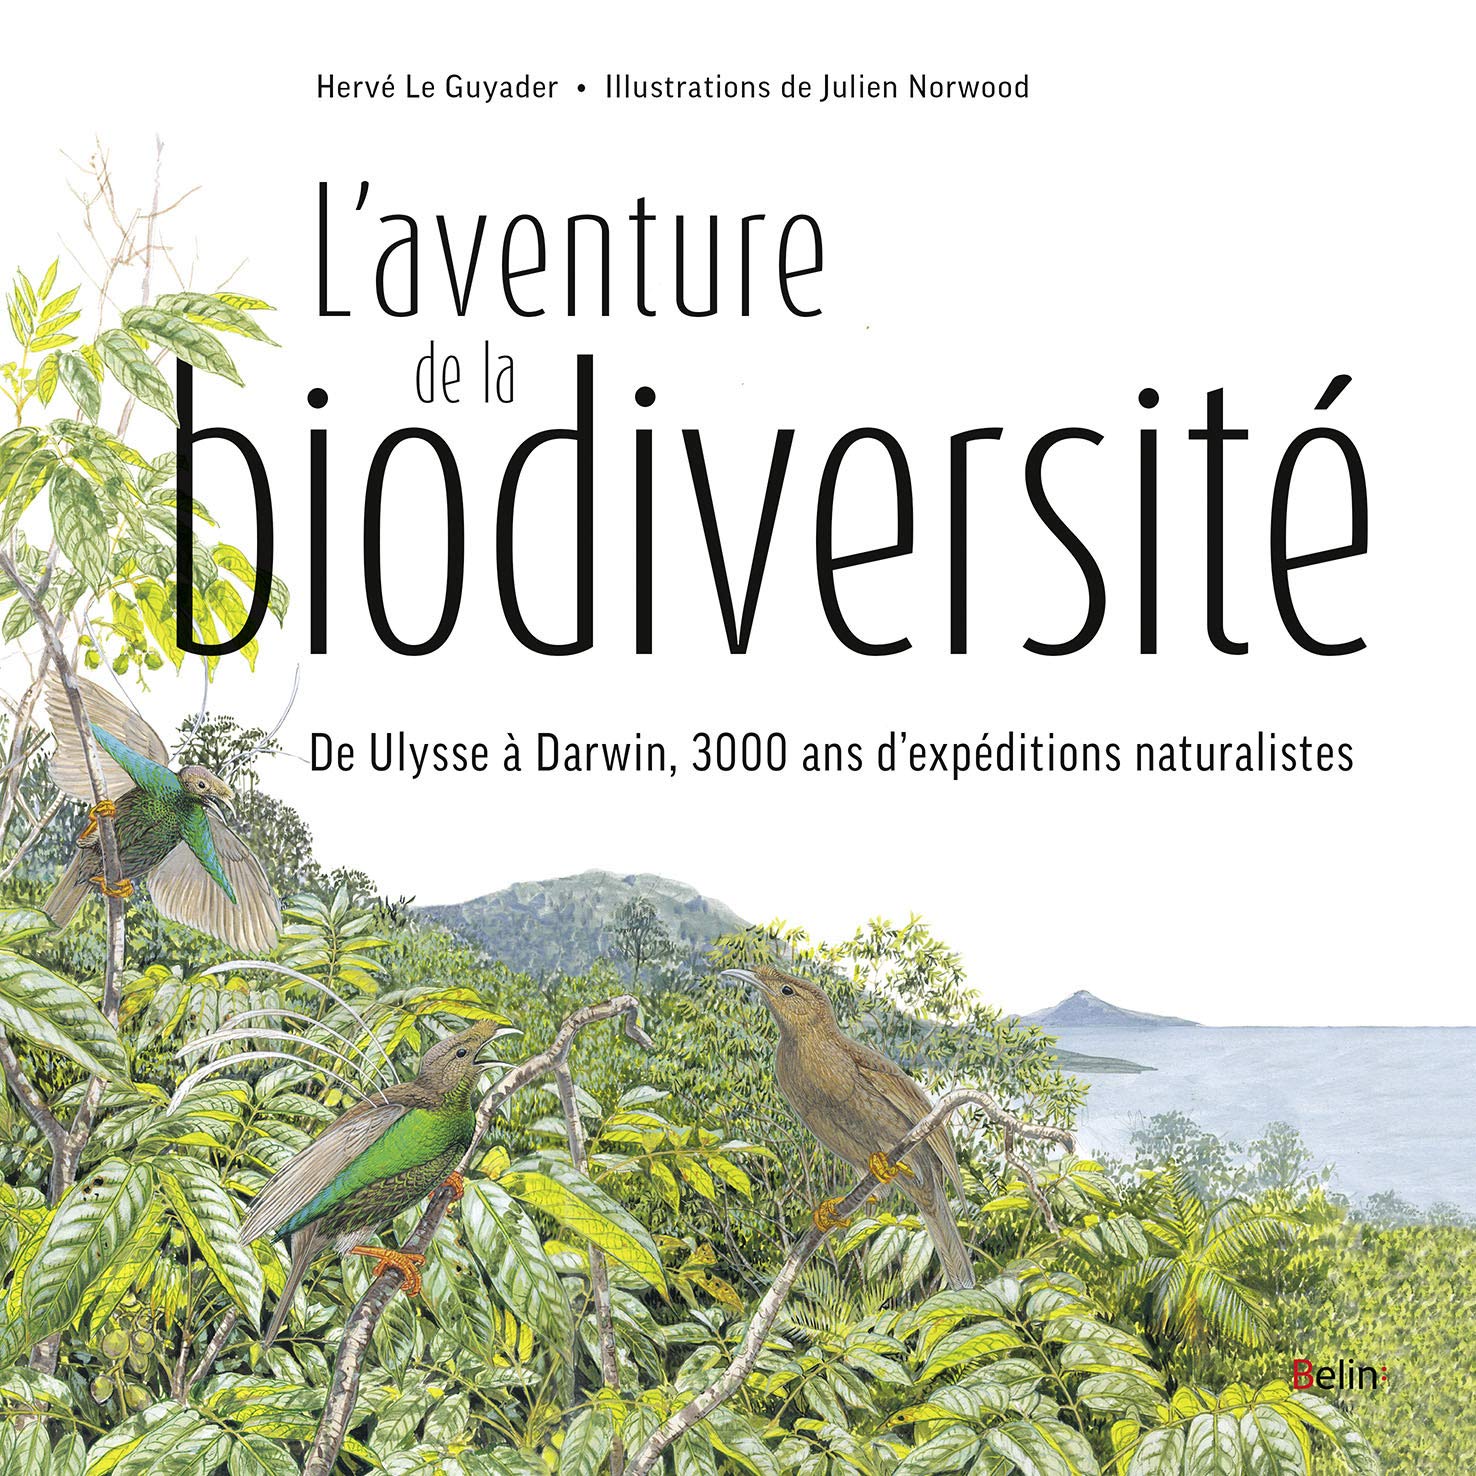 L'aventure de la biodiversité. D'Ulysse à Darwin, 3000 ans d'expéditions naturalistes, 2018, 270 p.